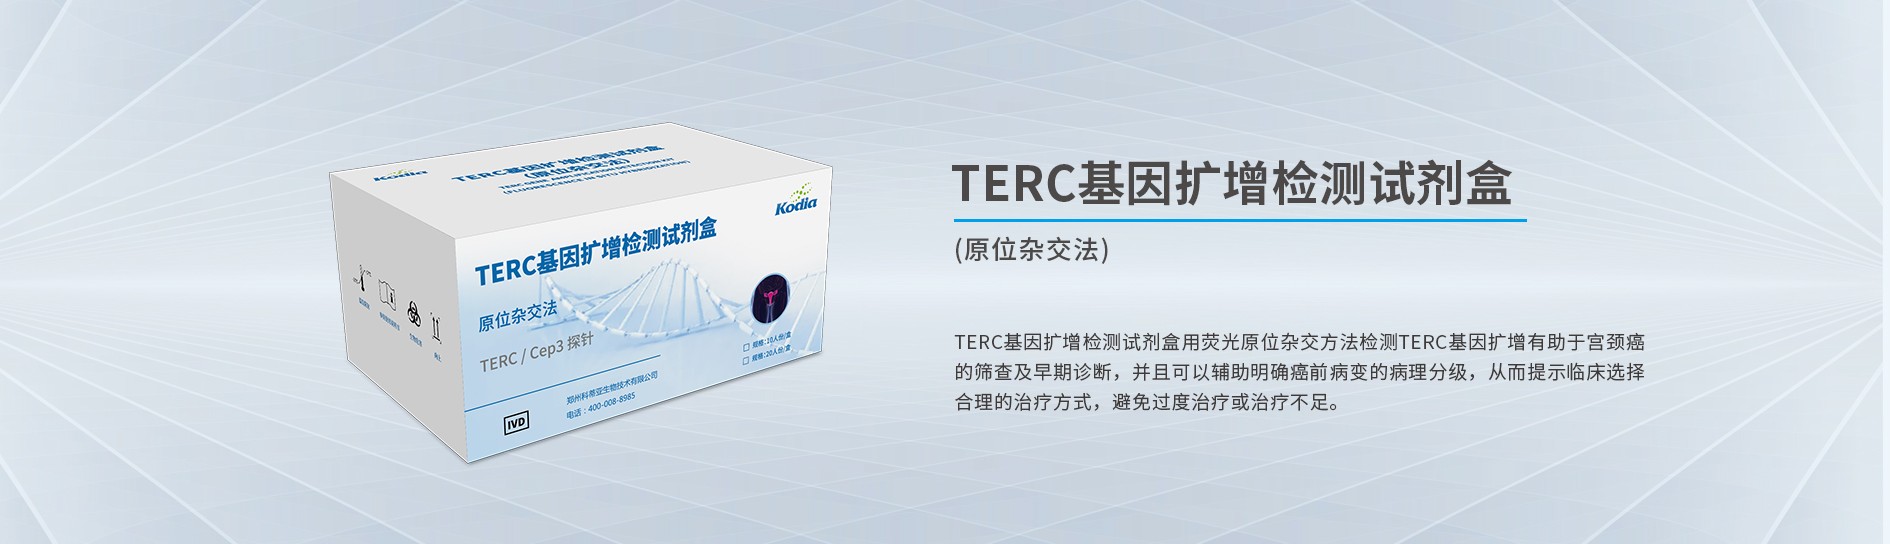 TERC基因扩增检测试剂盒(原位杂交法)